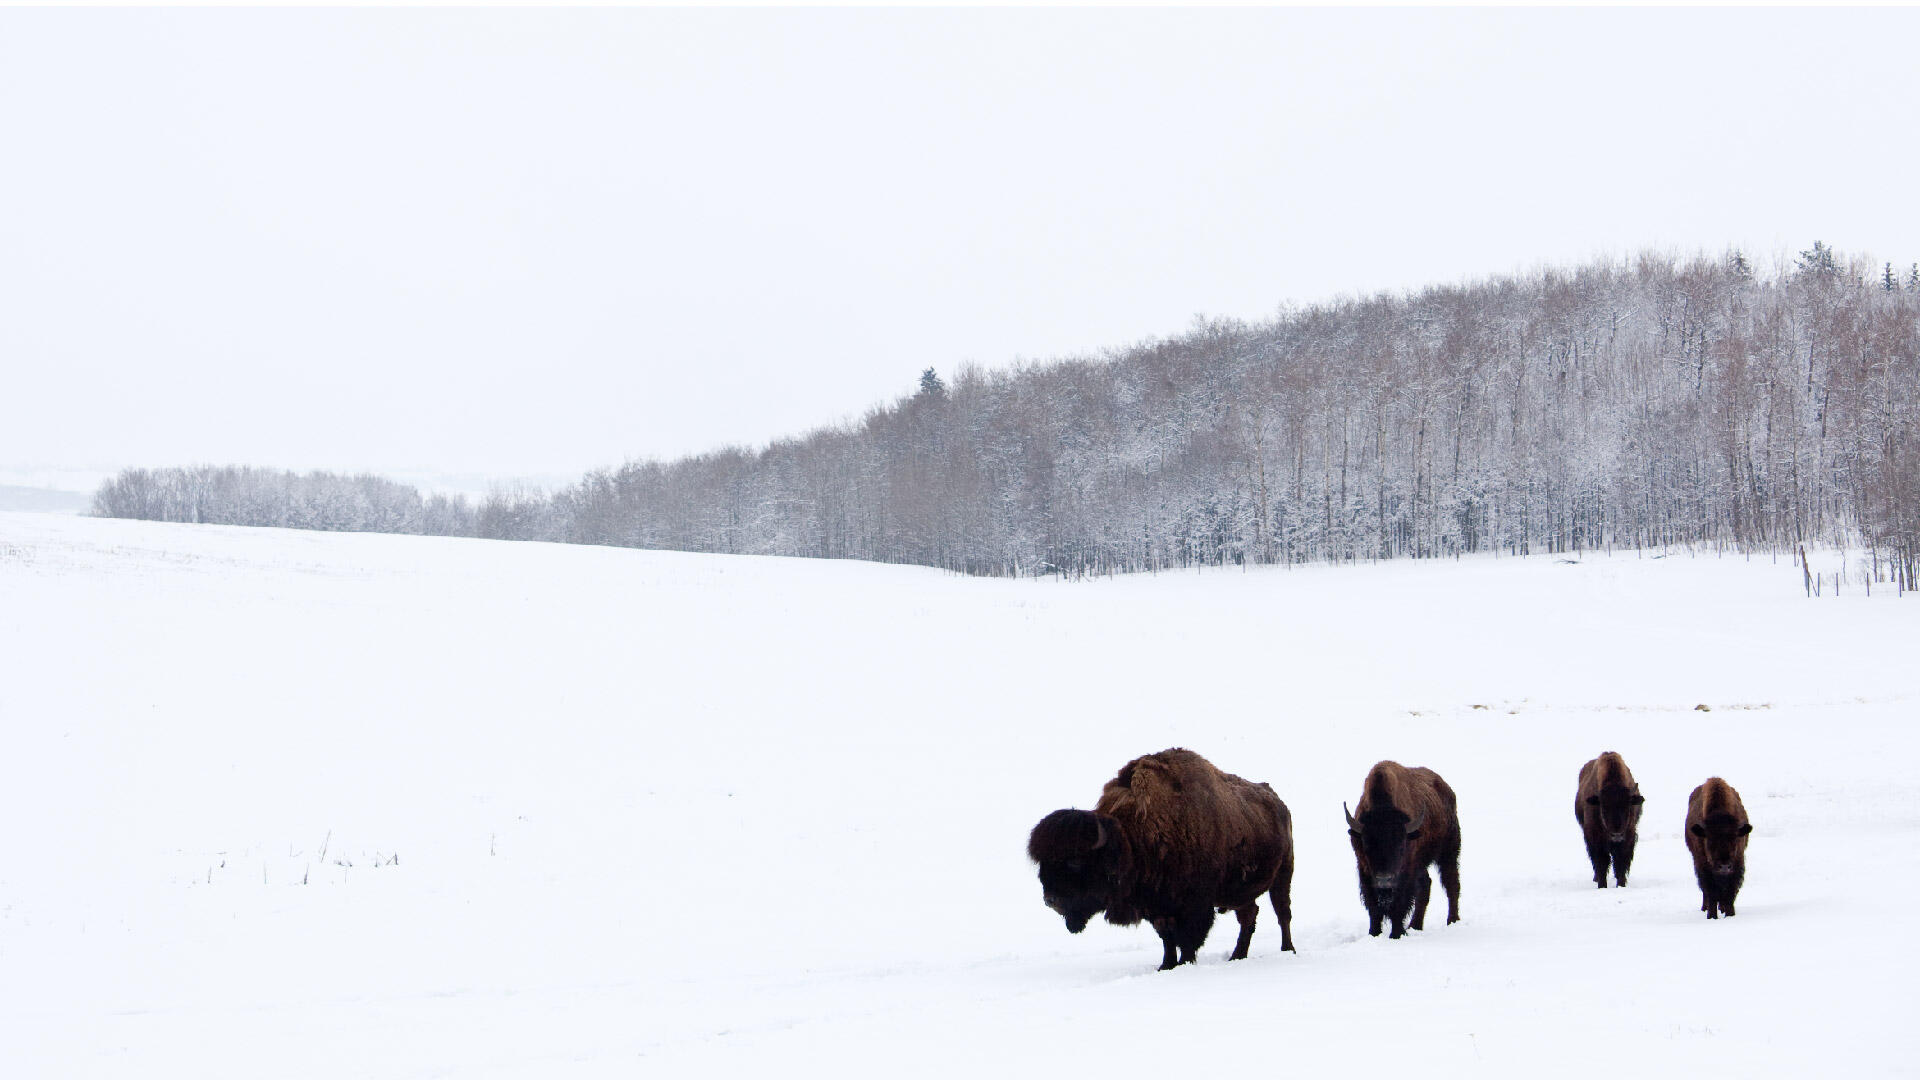 Bisons walking in a snowy field.